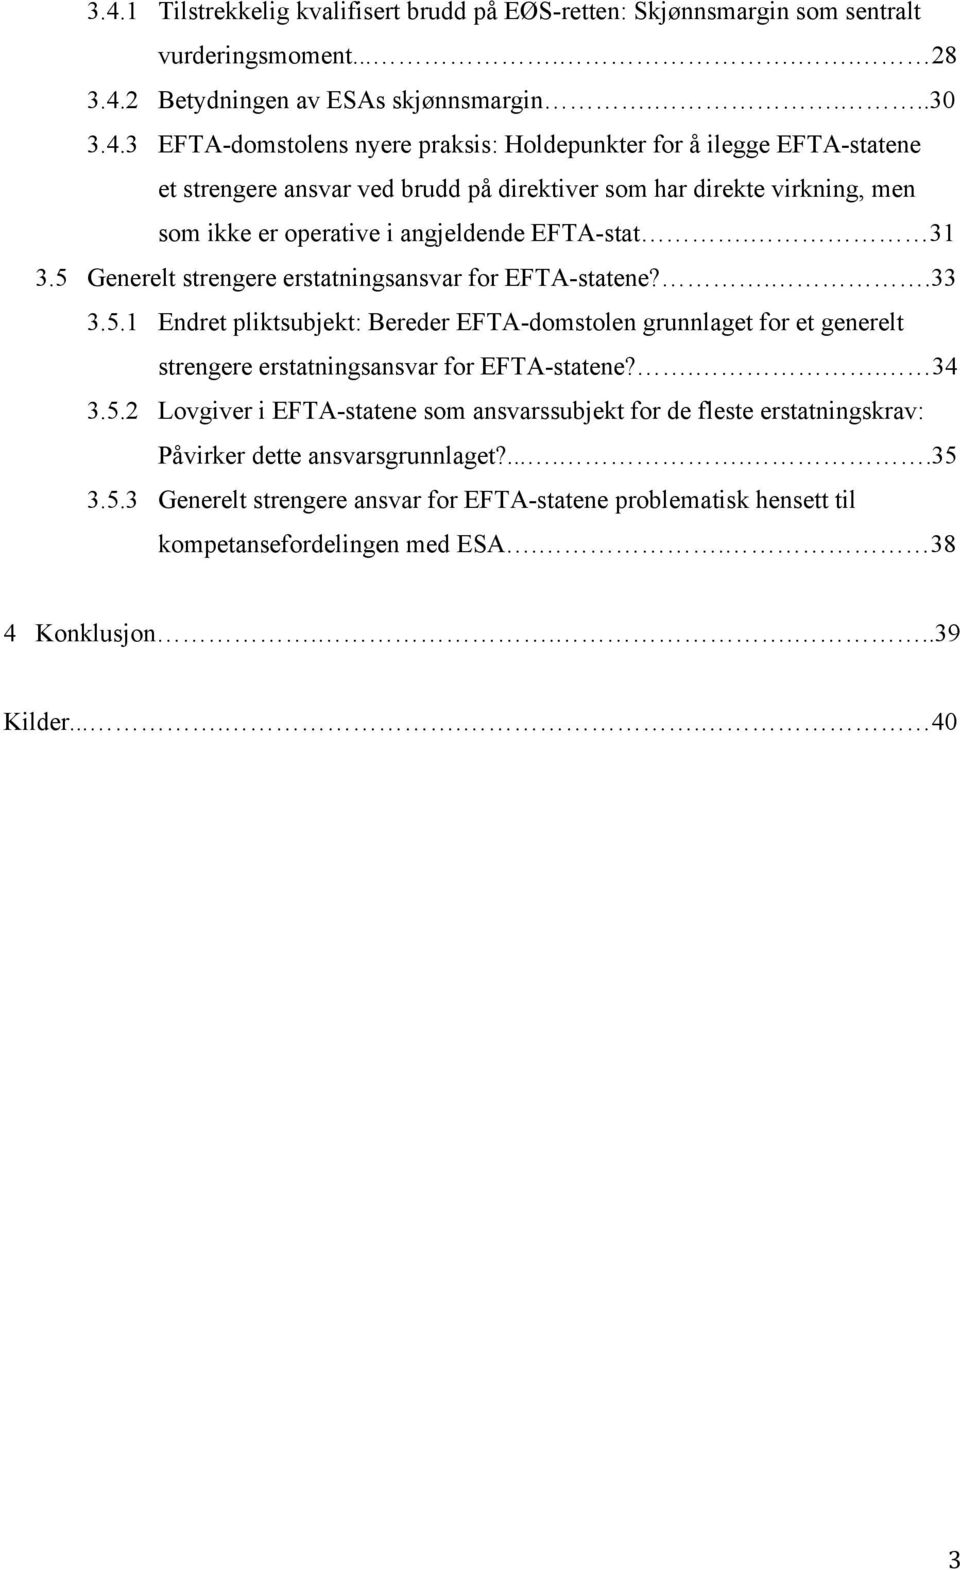 ......35 3.5.3 Generelt strengere ansvar for EFTA-statene problematisk hensett til kompetansefordelingen med ESA.. 38 4 Konklusjon.....39 Kilder...... 40 3